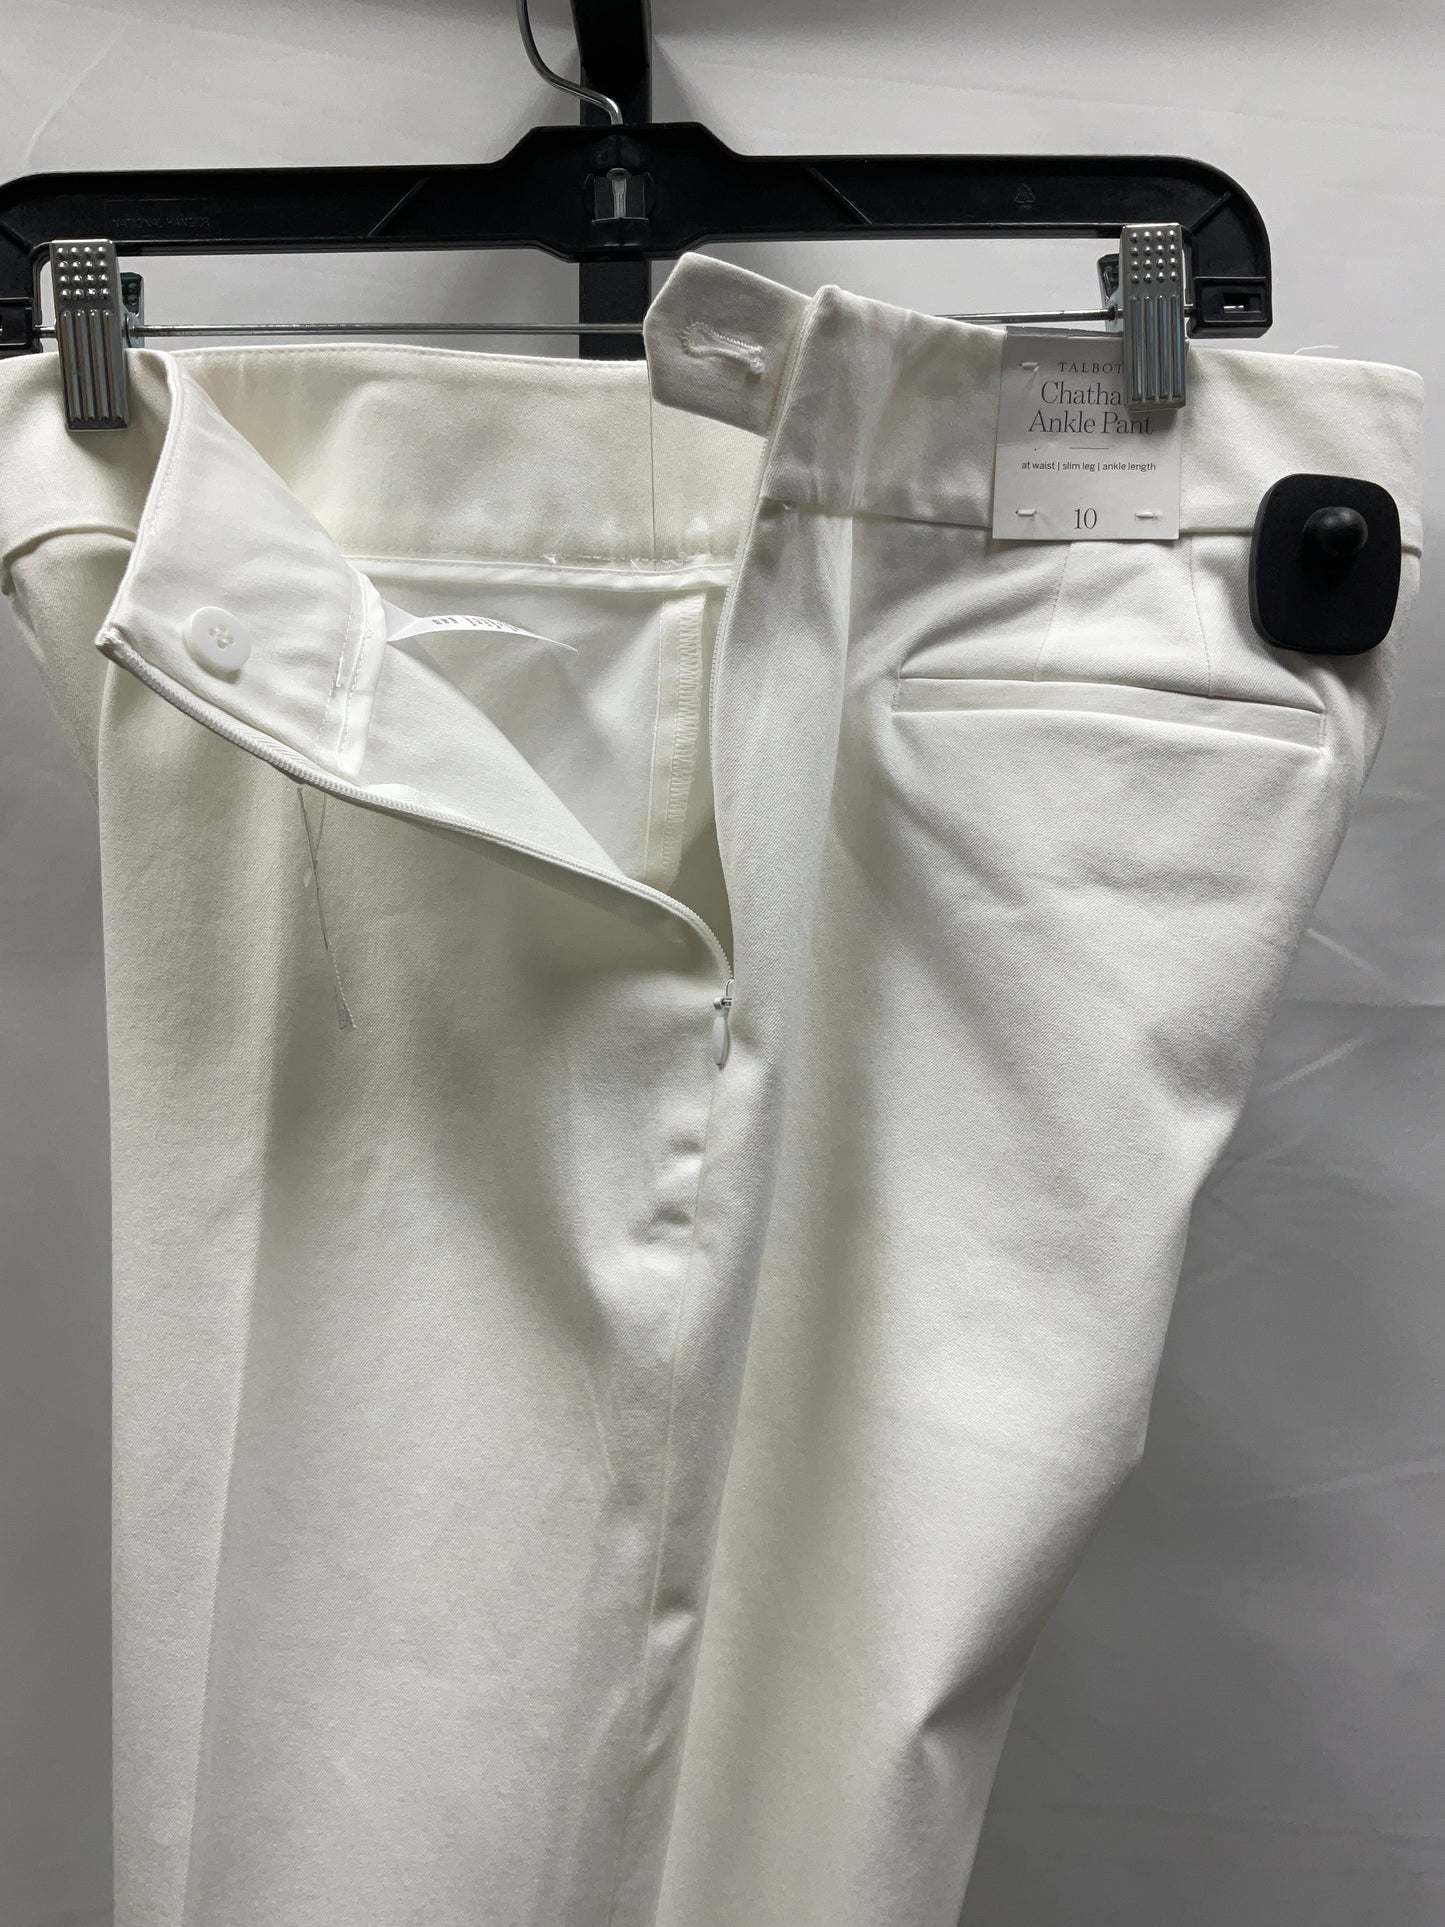 White Pants Dress Talbots, Size 10